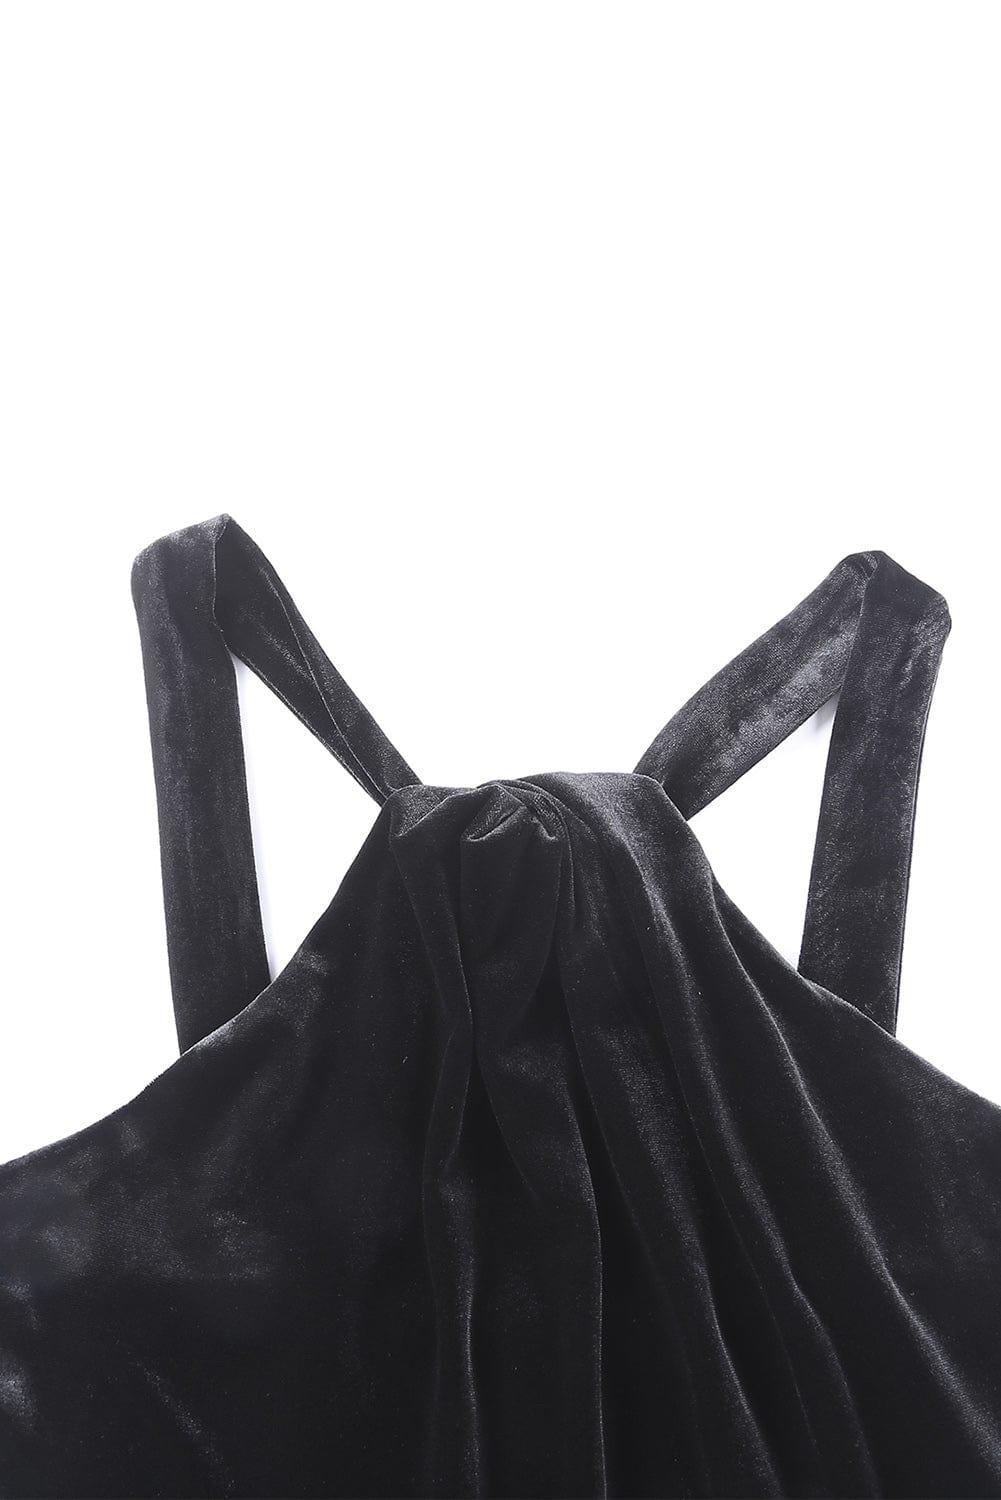 Sequin Fringe Detail Sleeveless Dress - Body By J'ne